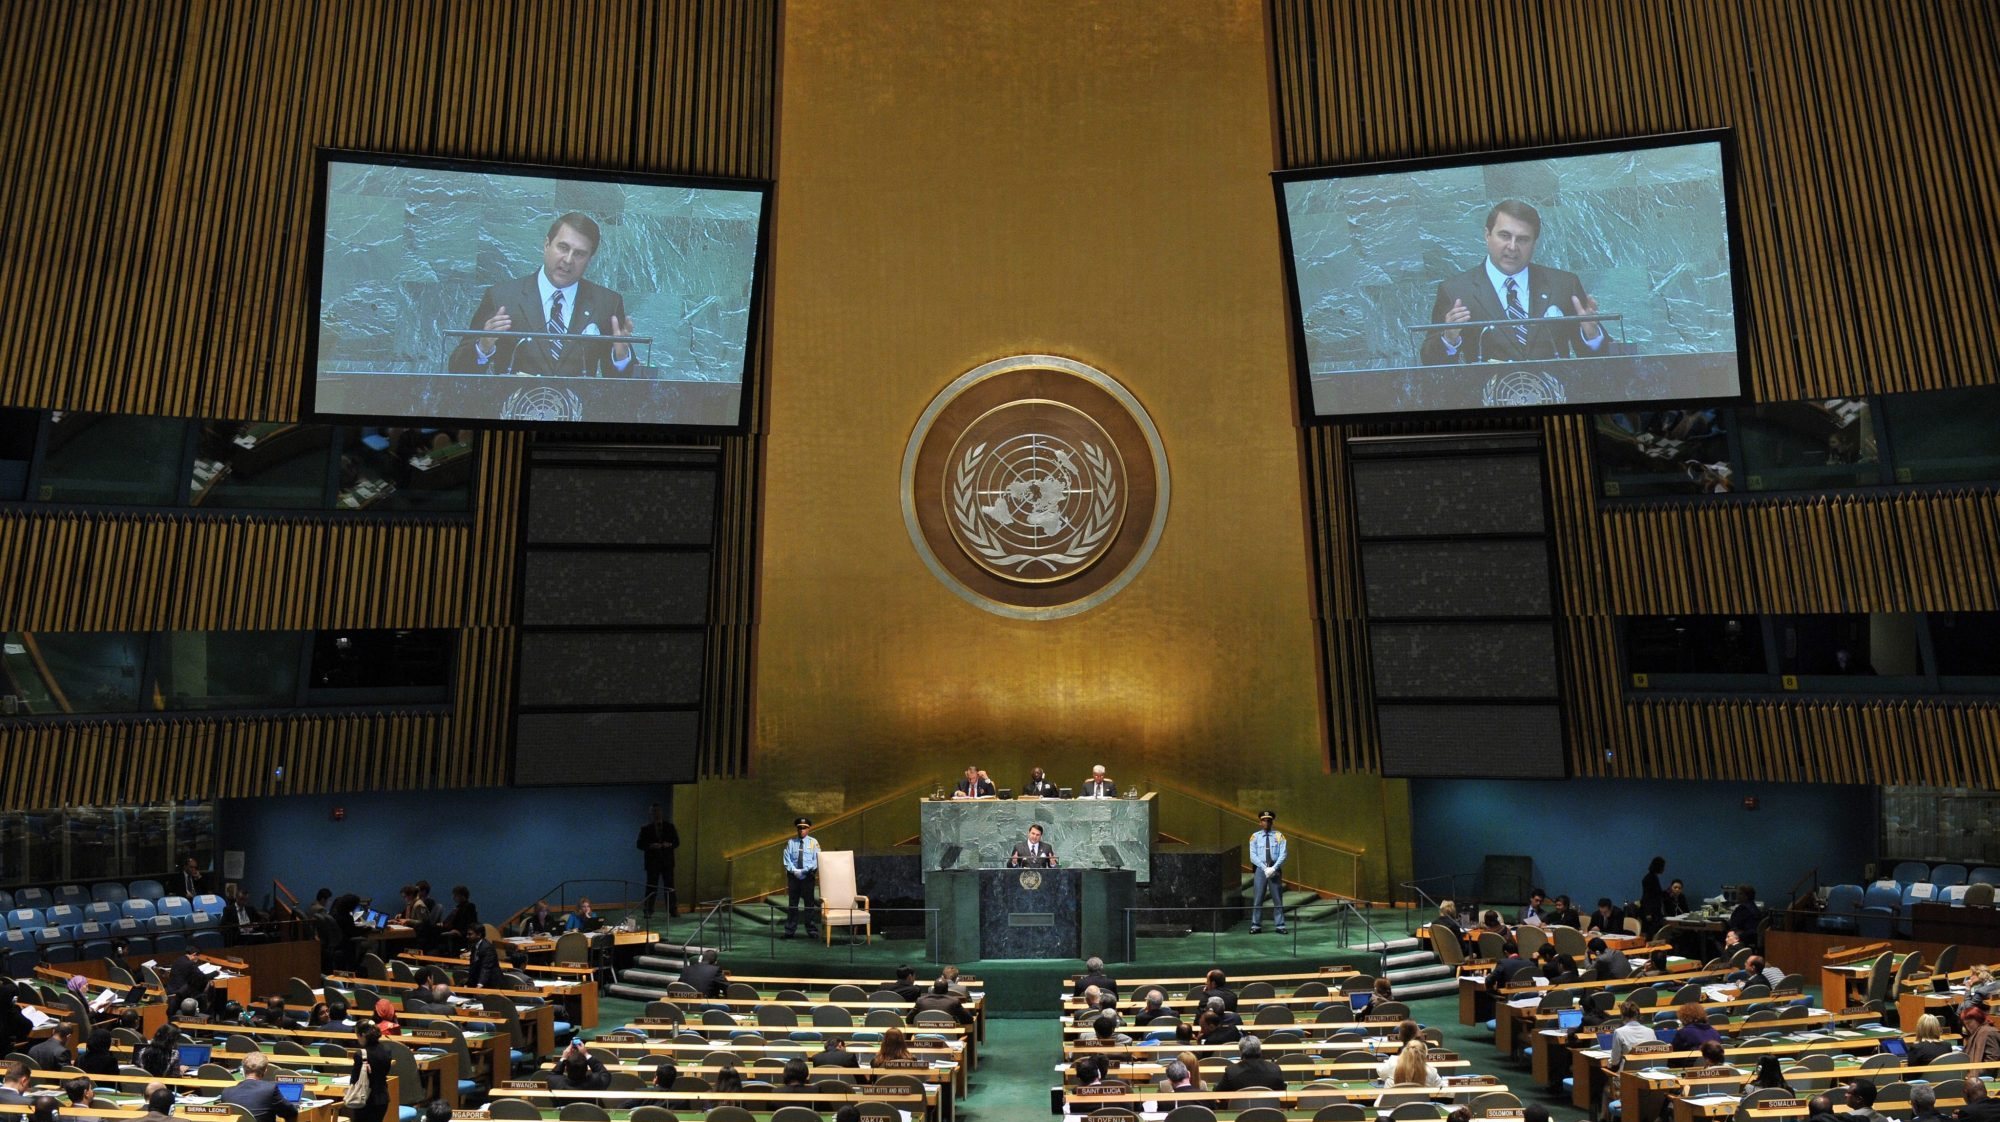 O presidente do Paraguai numa sessão na Assembleia Geral das Nações Unidas, na sede em Nova Iorque,. 27 de setembro de 2012